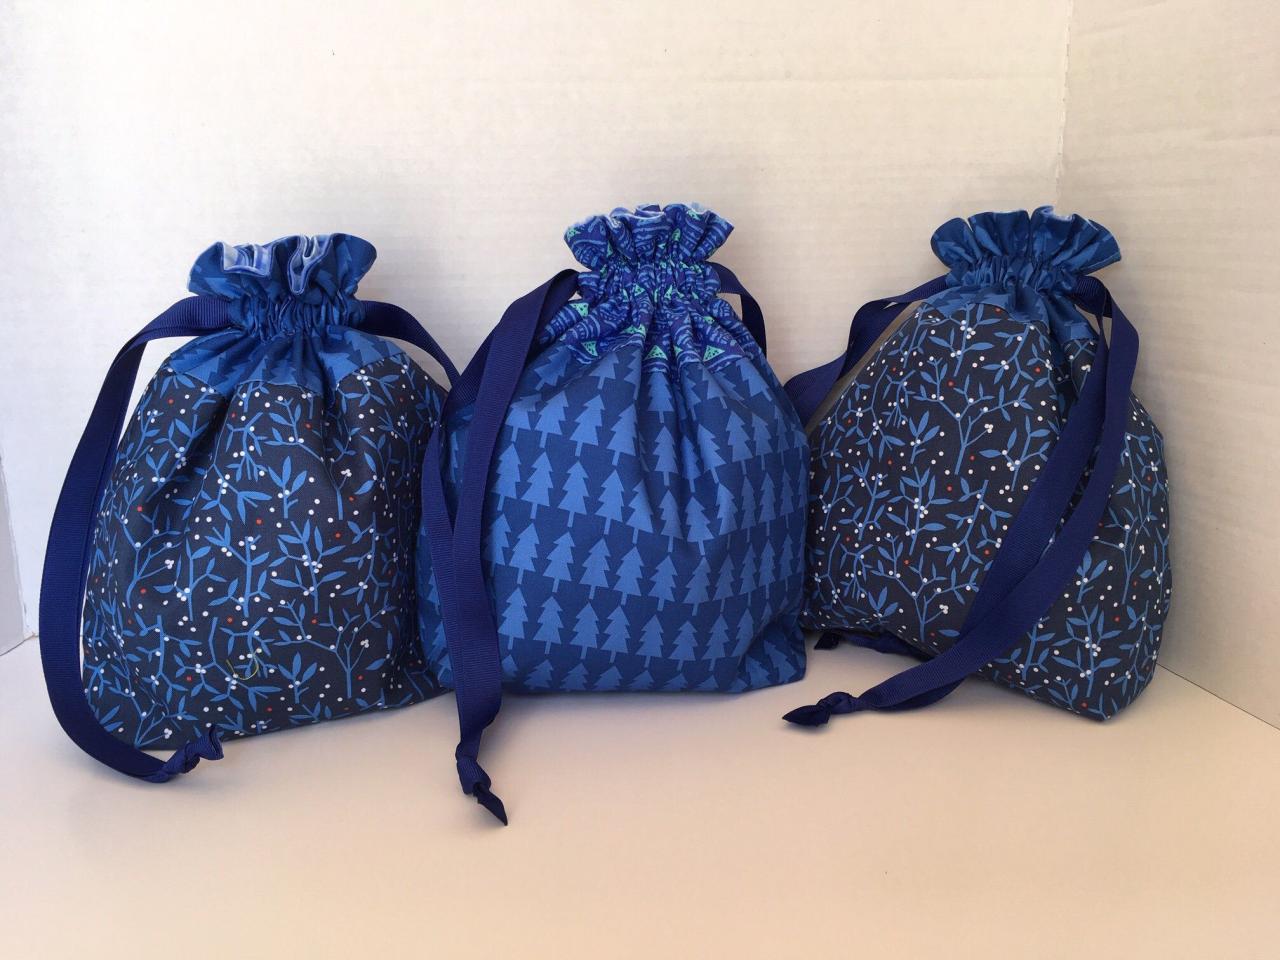 Organícese y ahorre con bolsas de regalo con cordón al por mayor: ¡opciones asequibles y elegantes disponibles!